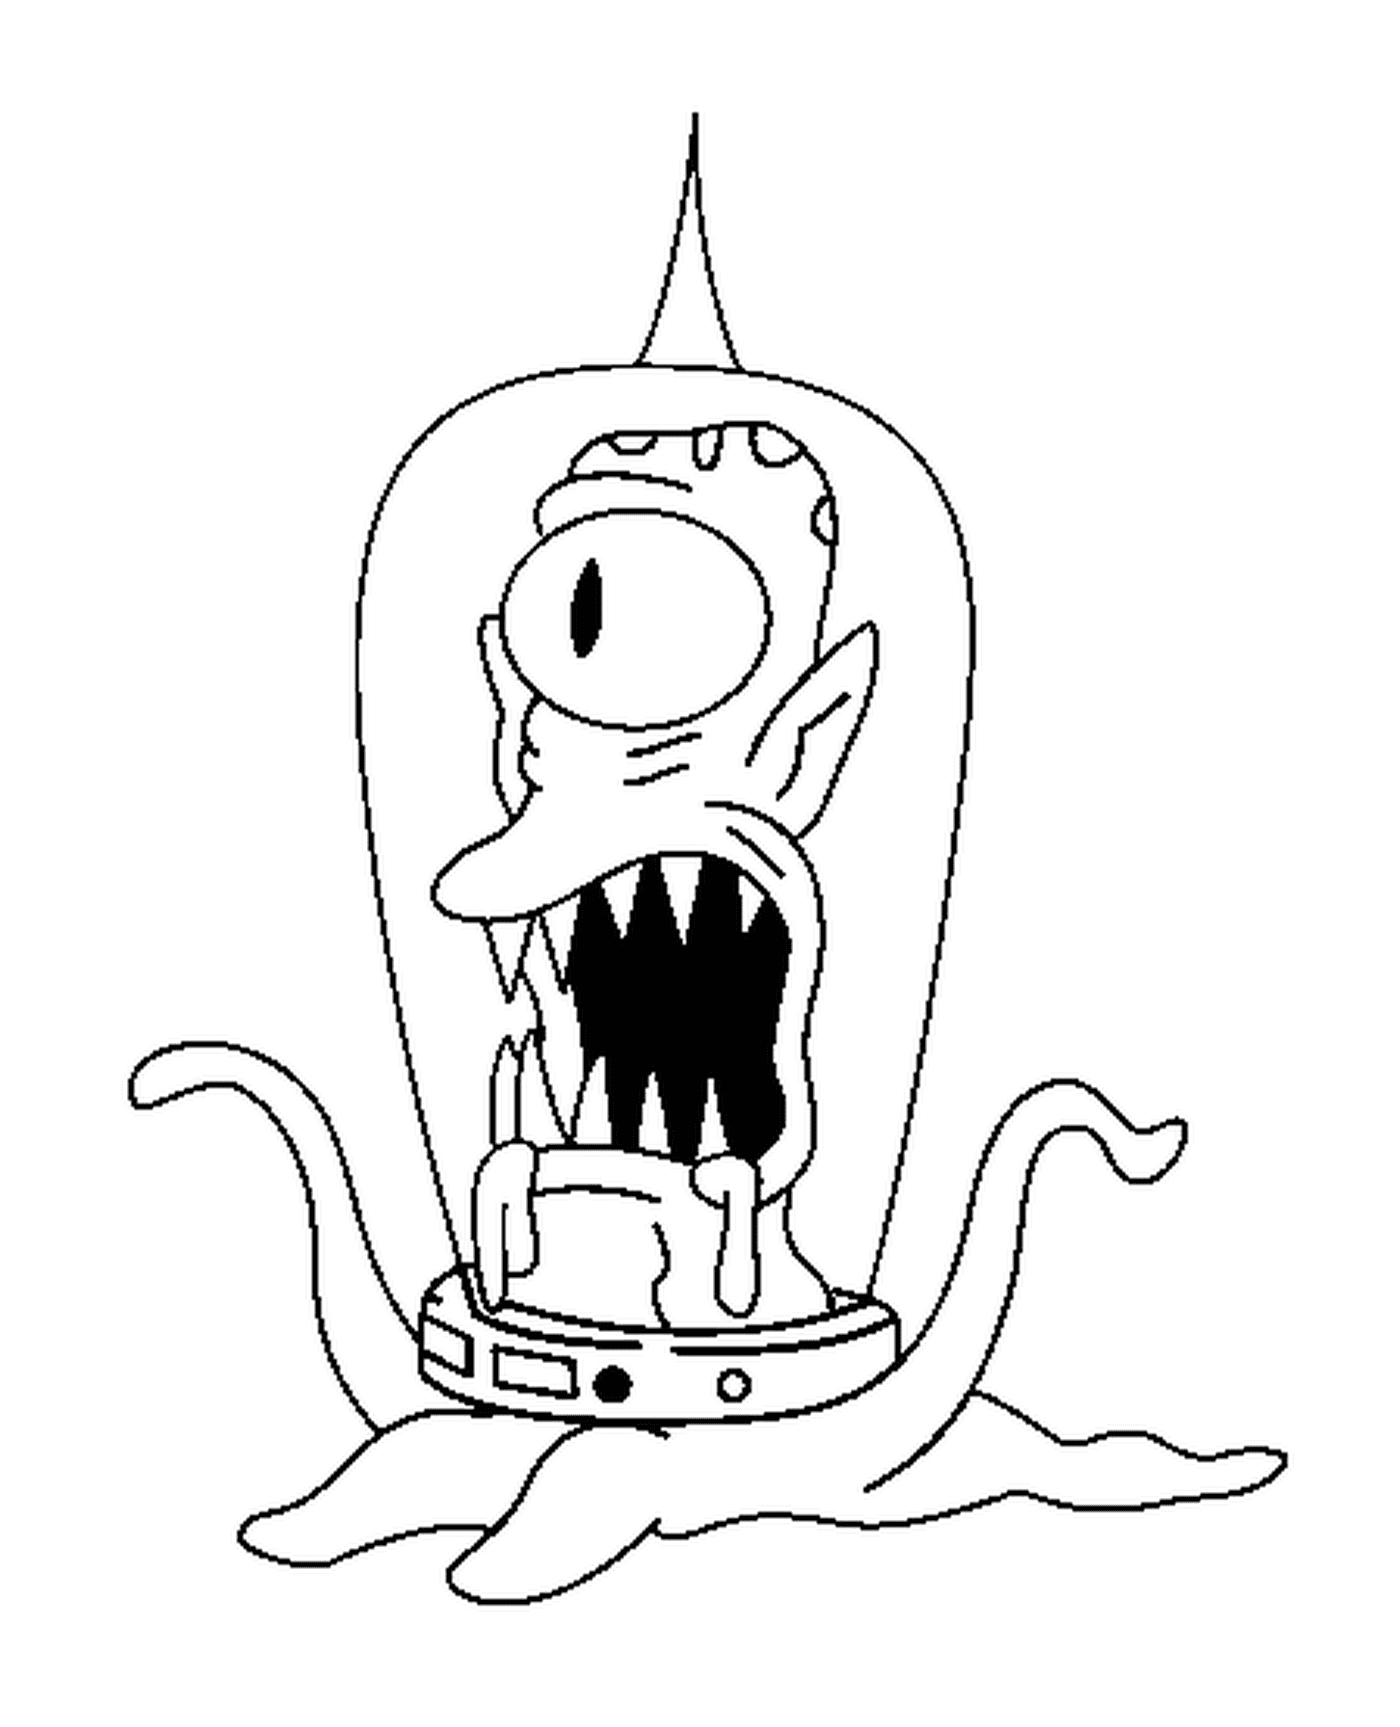  Alien, Zeichentrickfigur mit einem seltsamen Gesicht 